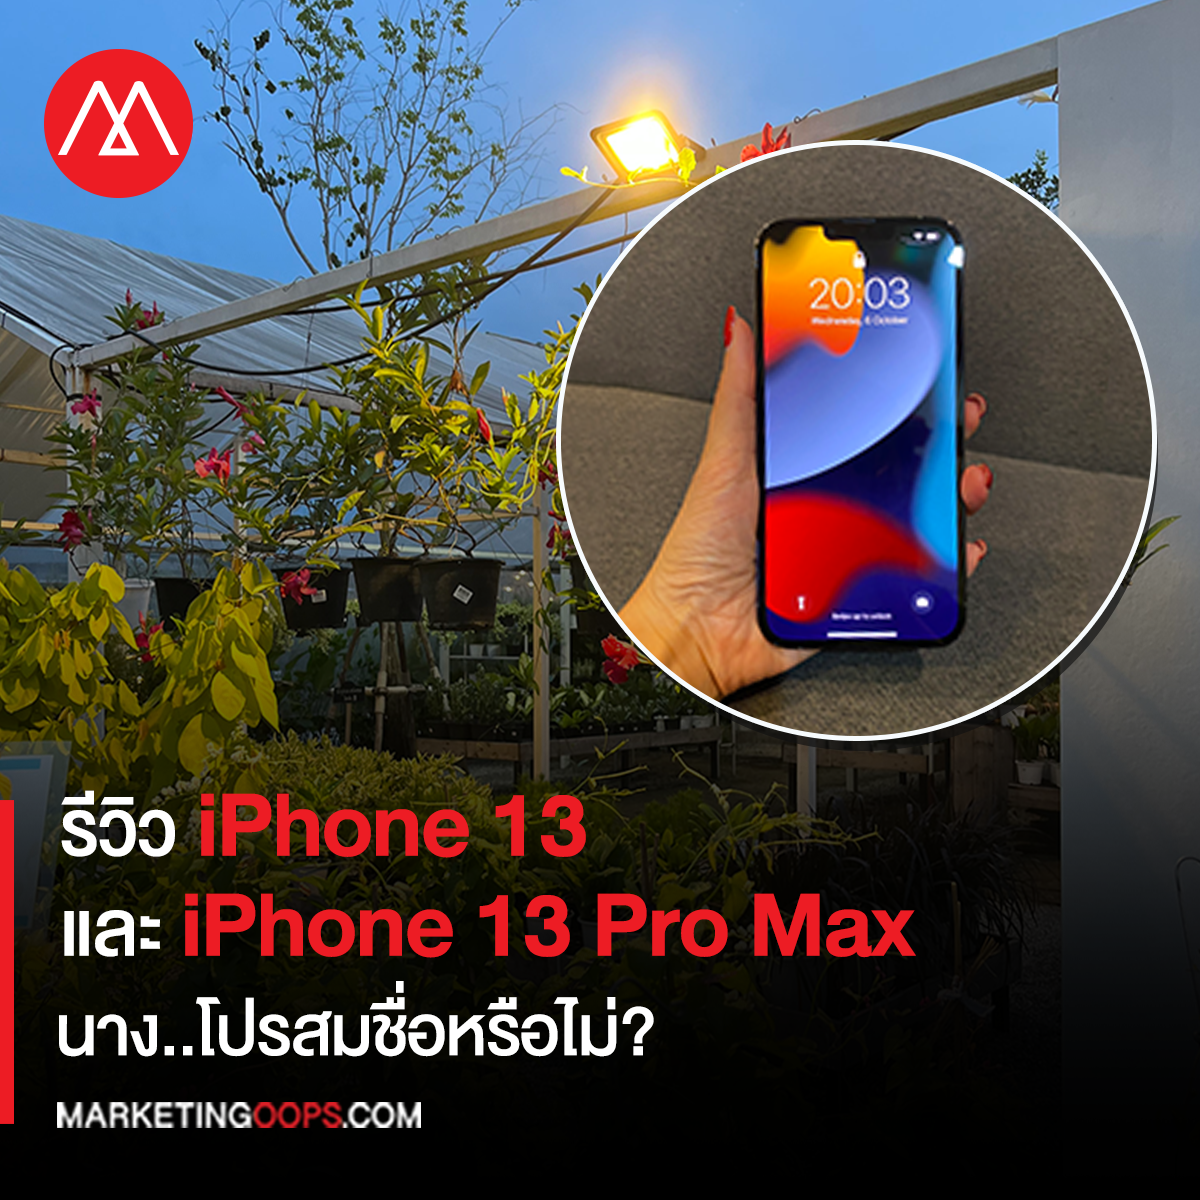 รีวิว iPhone 13 และ iPhone 13 Pro Max นาง..โปรสมชื่อหรือไม่?